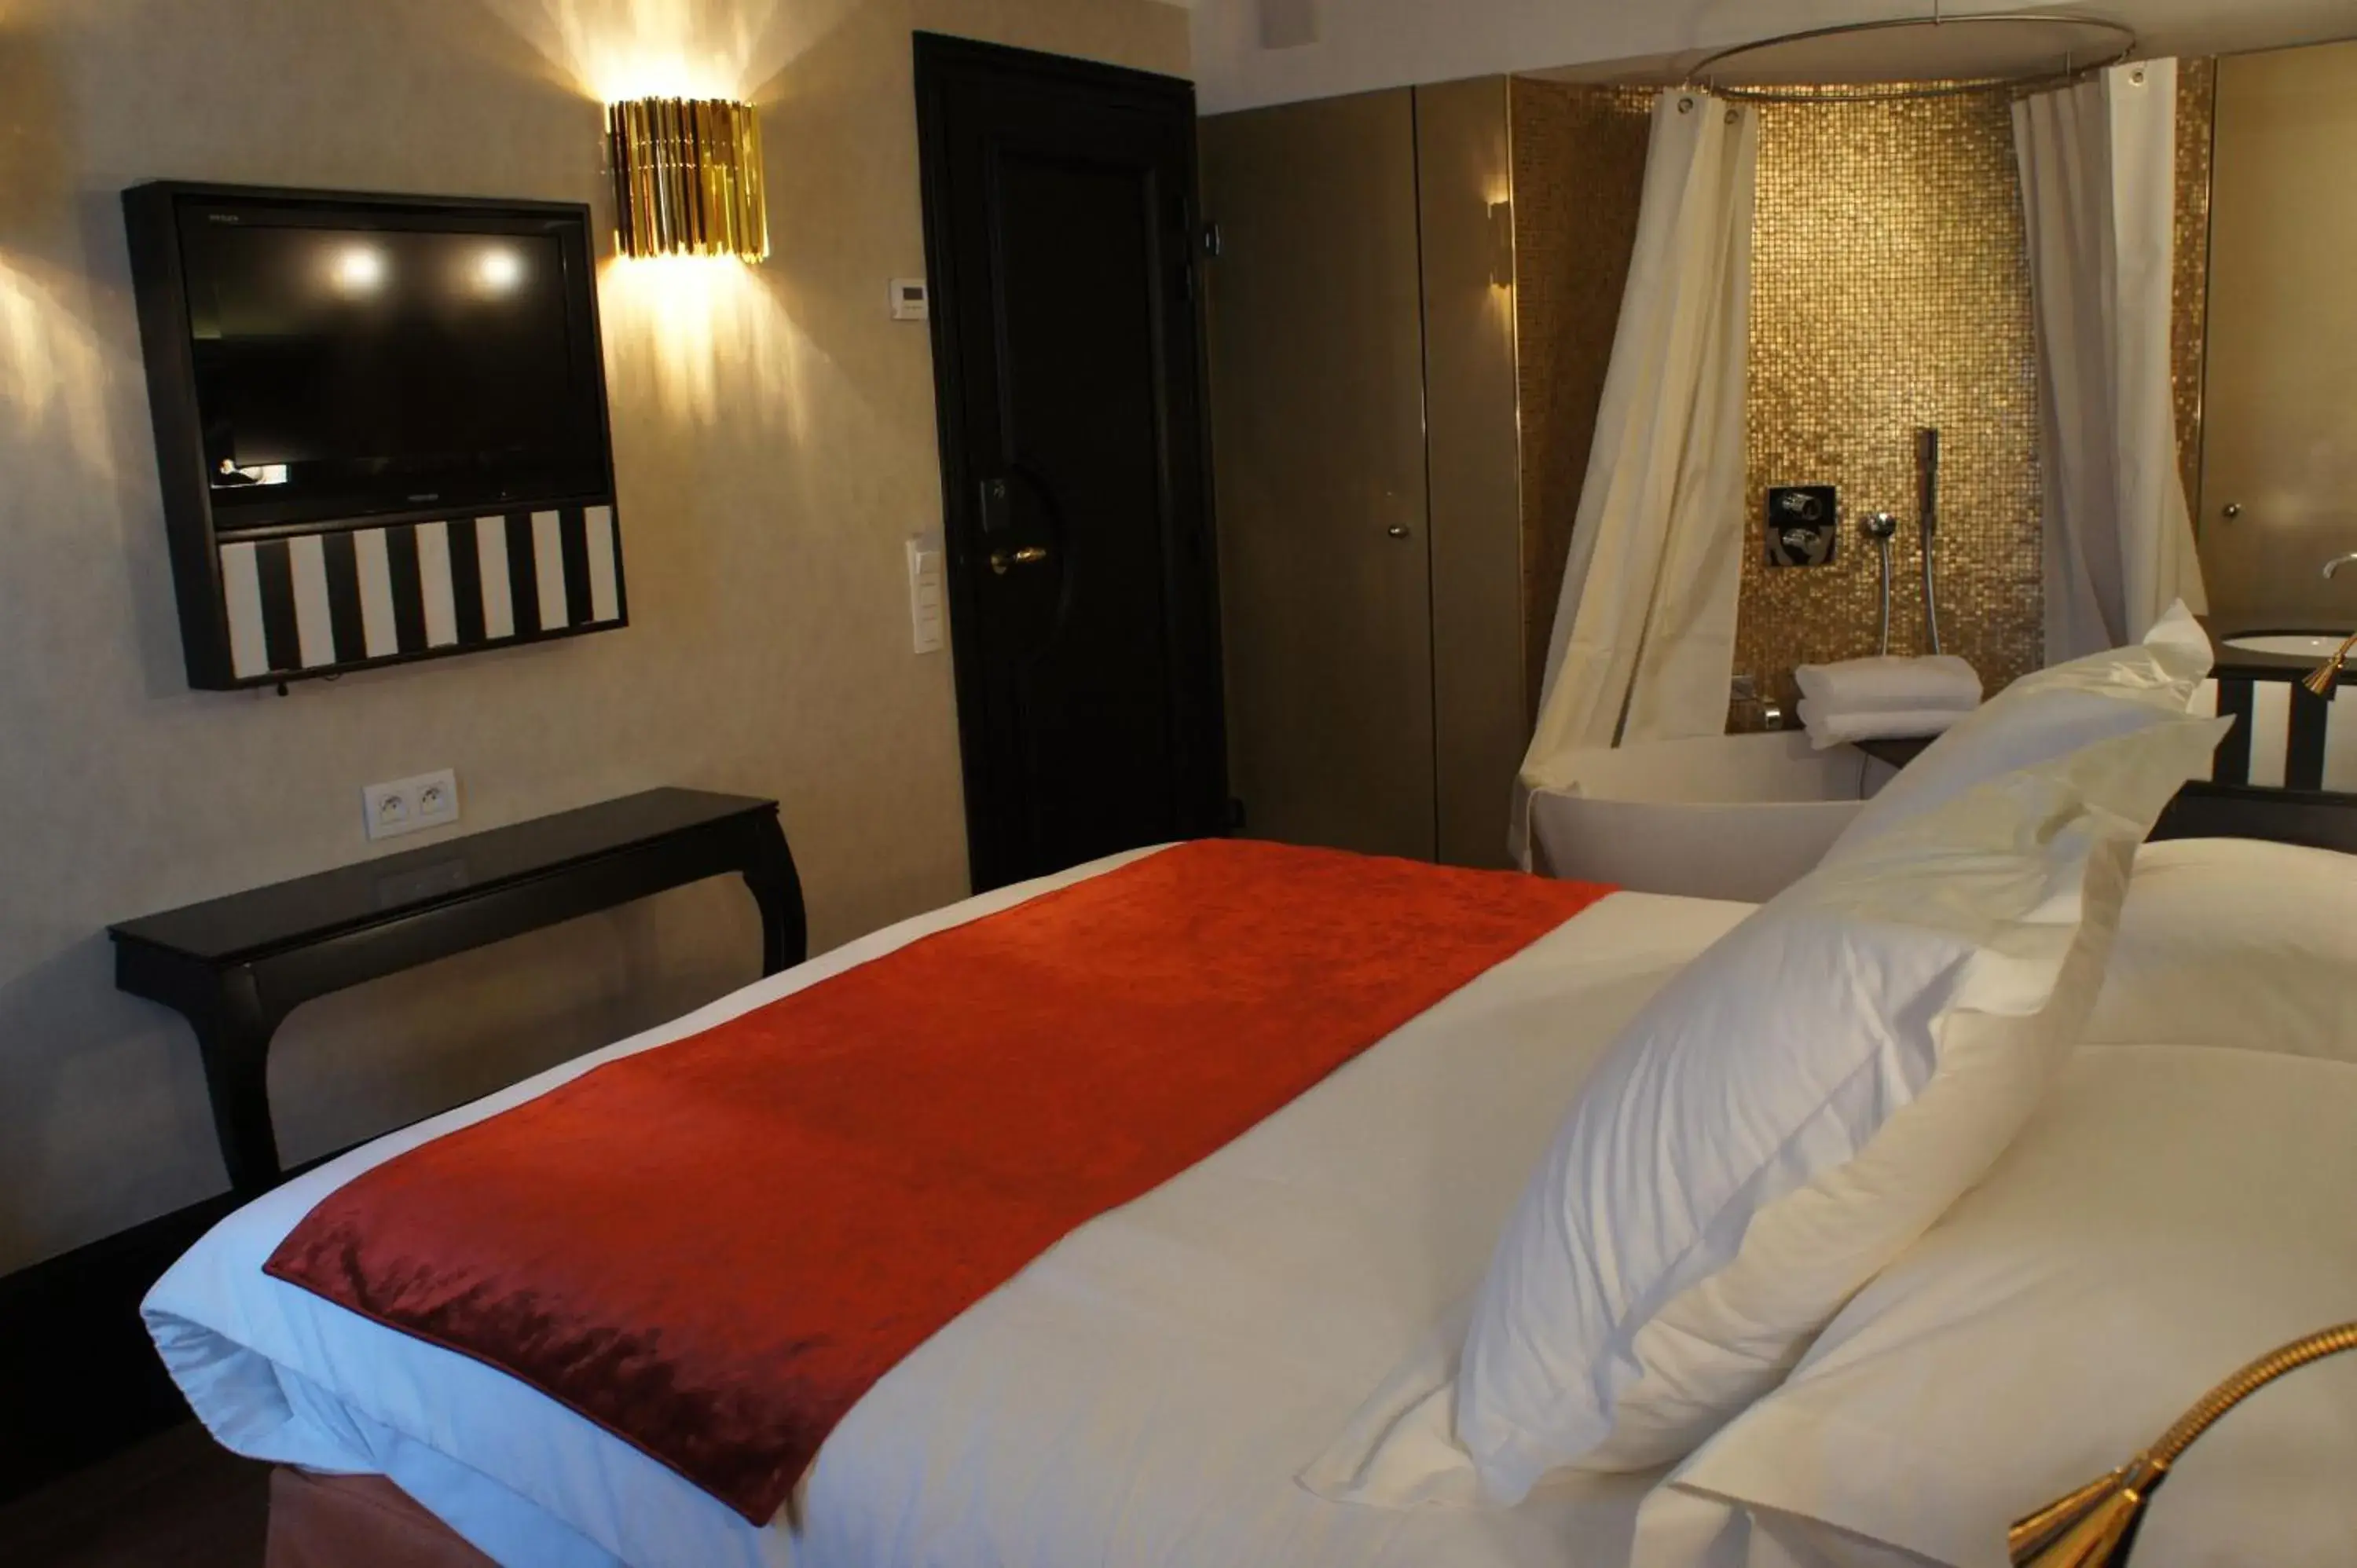 Bedroom, Bed in Tonic Hotel Saint Germain des Pr